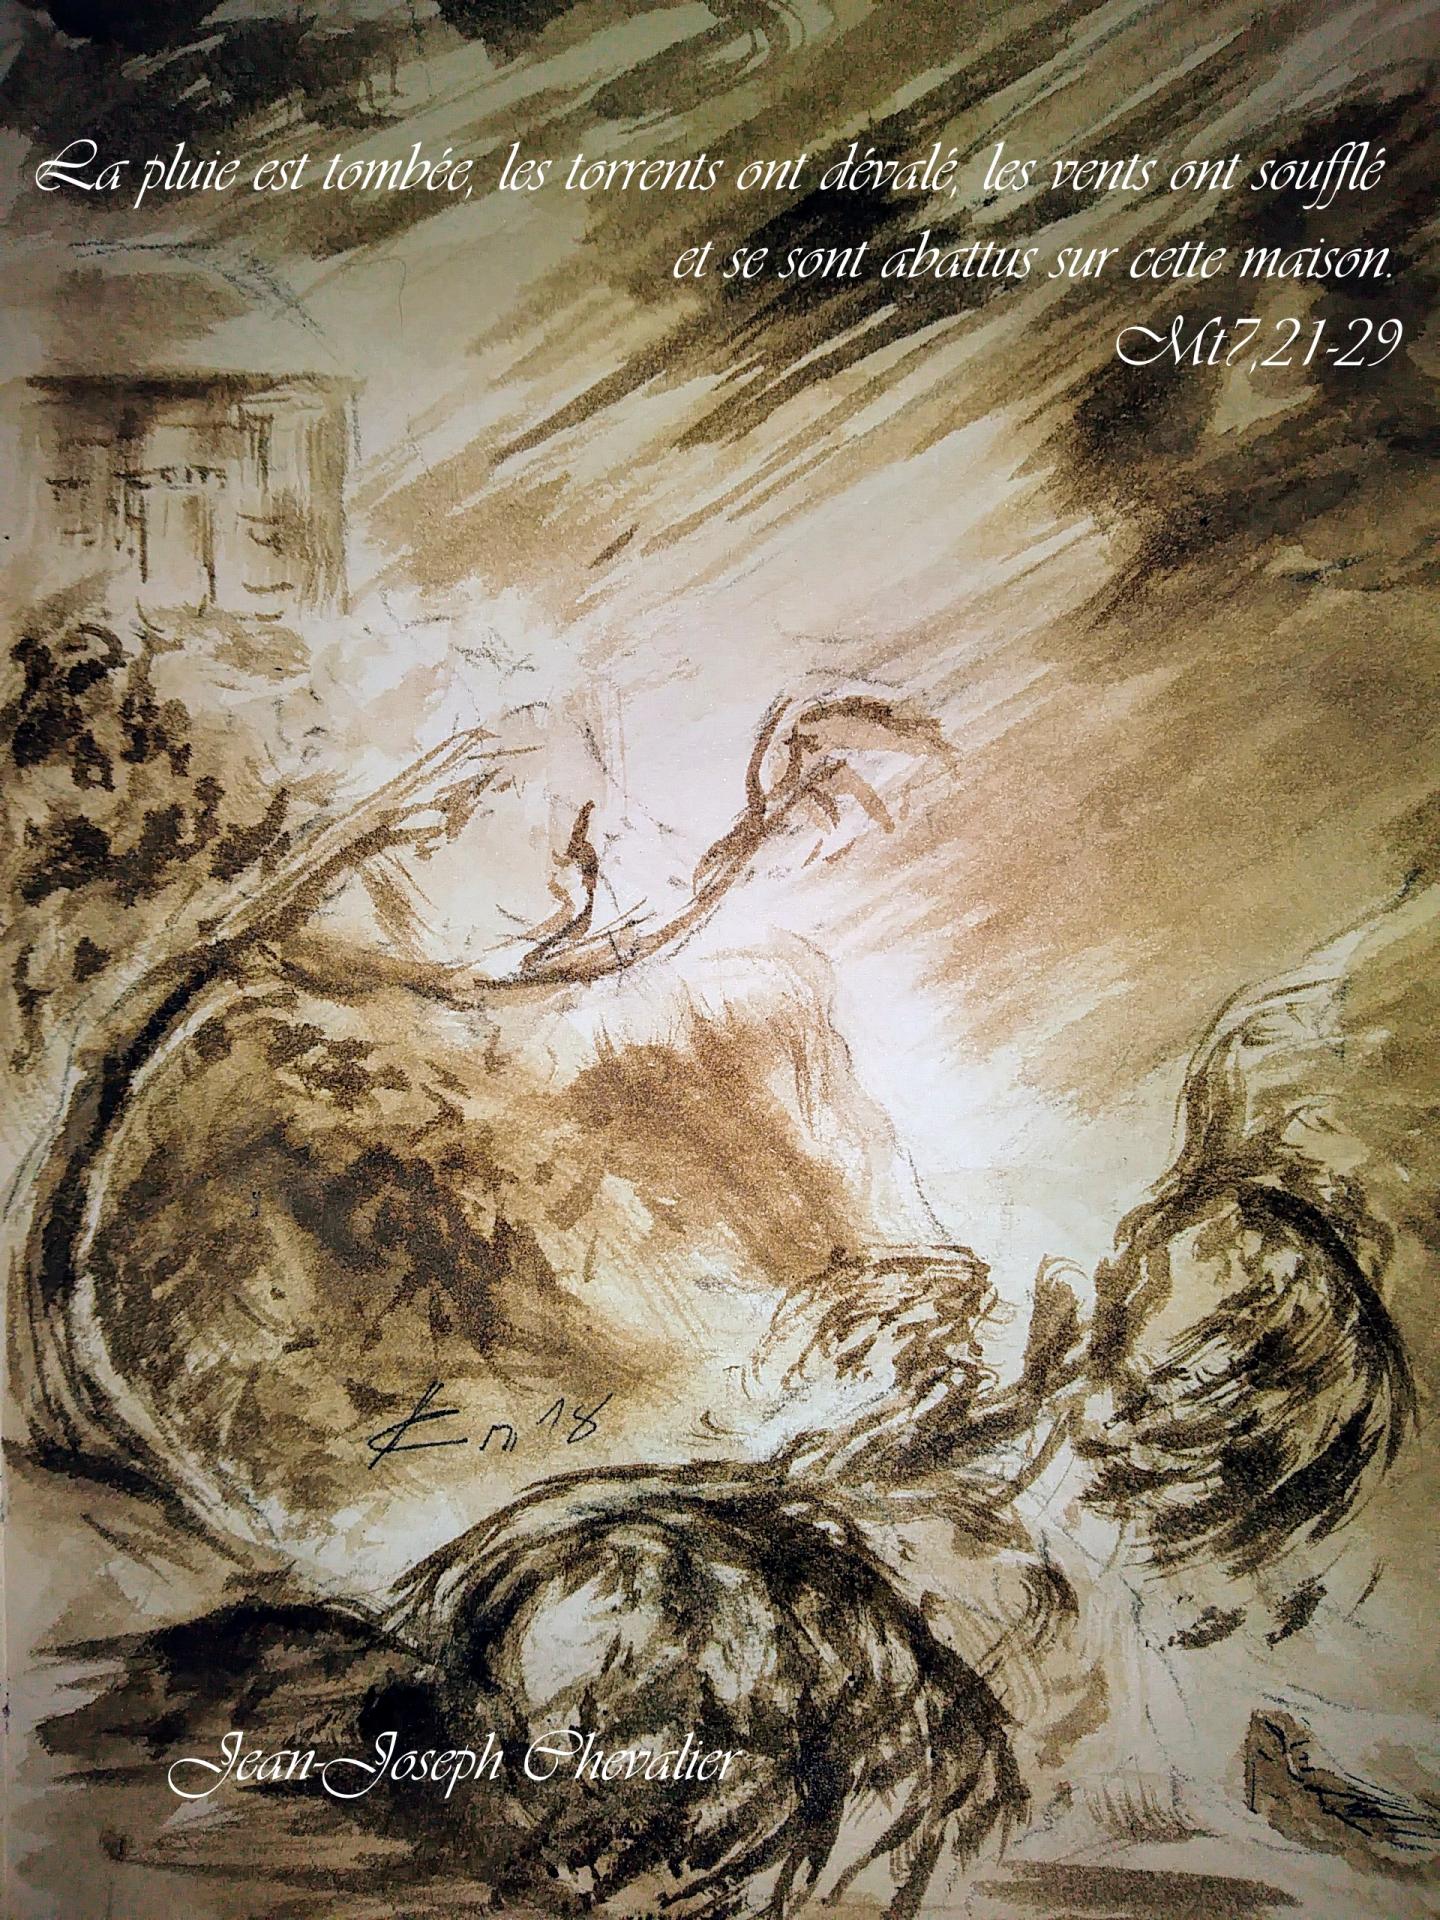 28 Juin 2018, évangile du jour illustré par un dessin au lavis